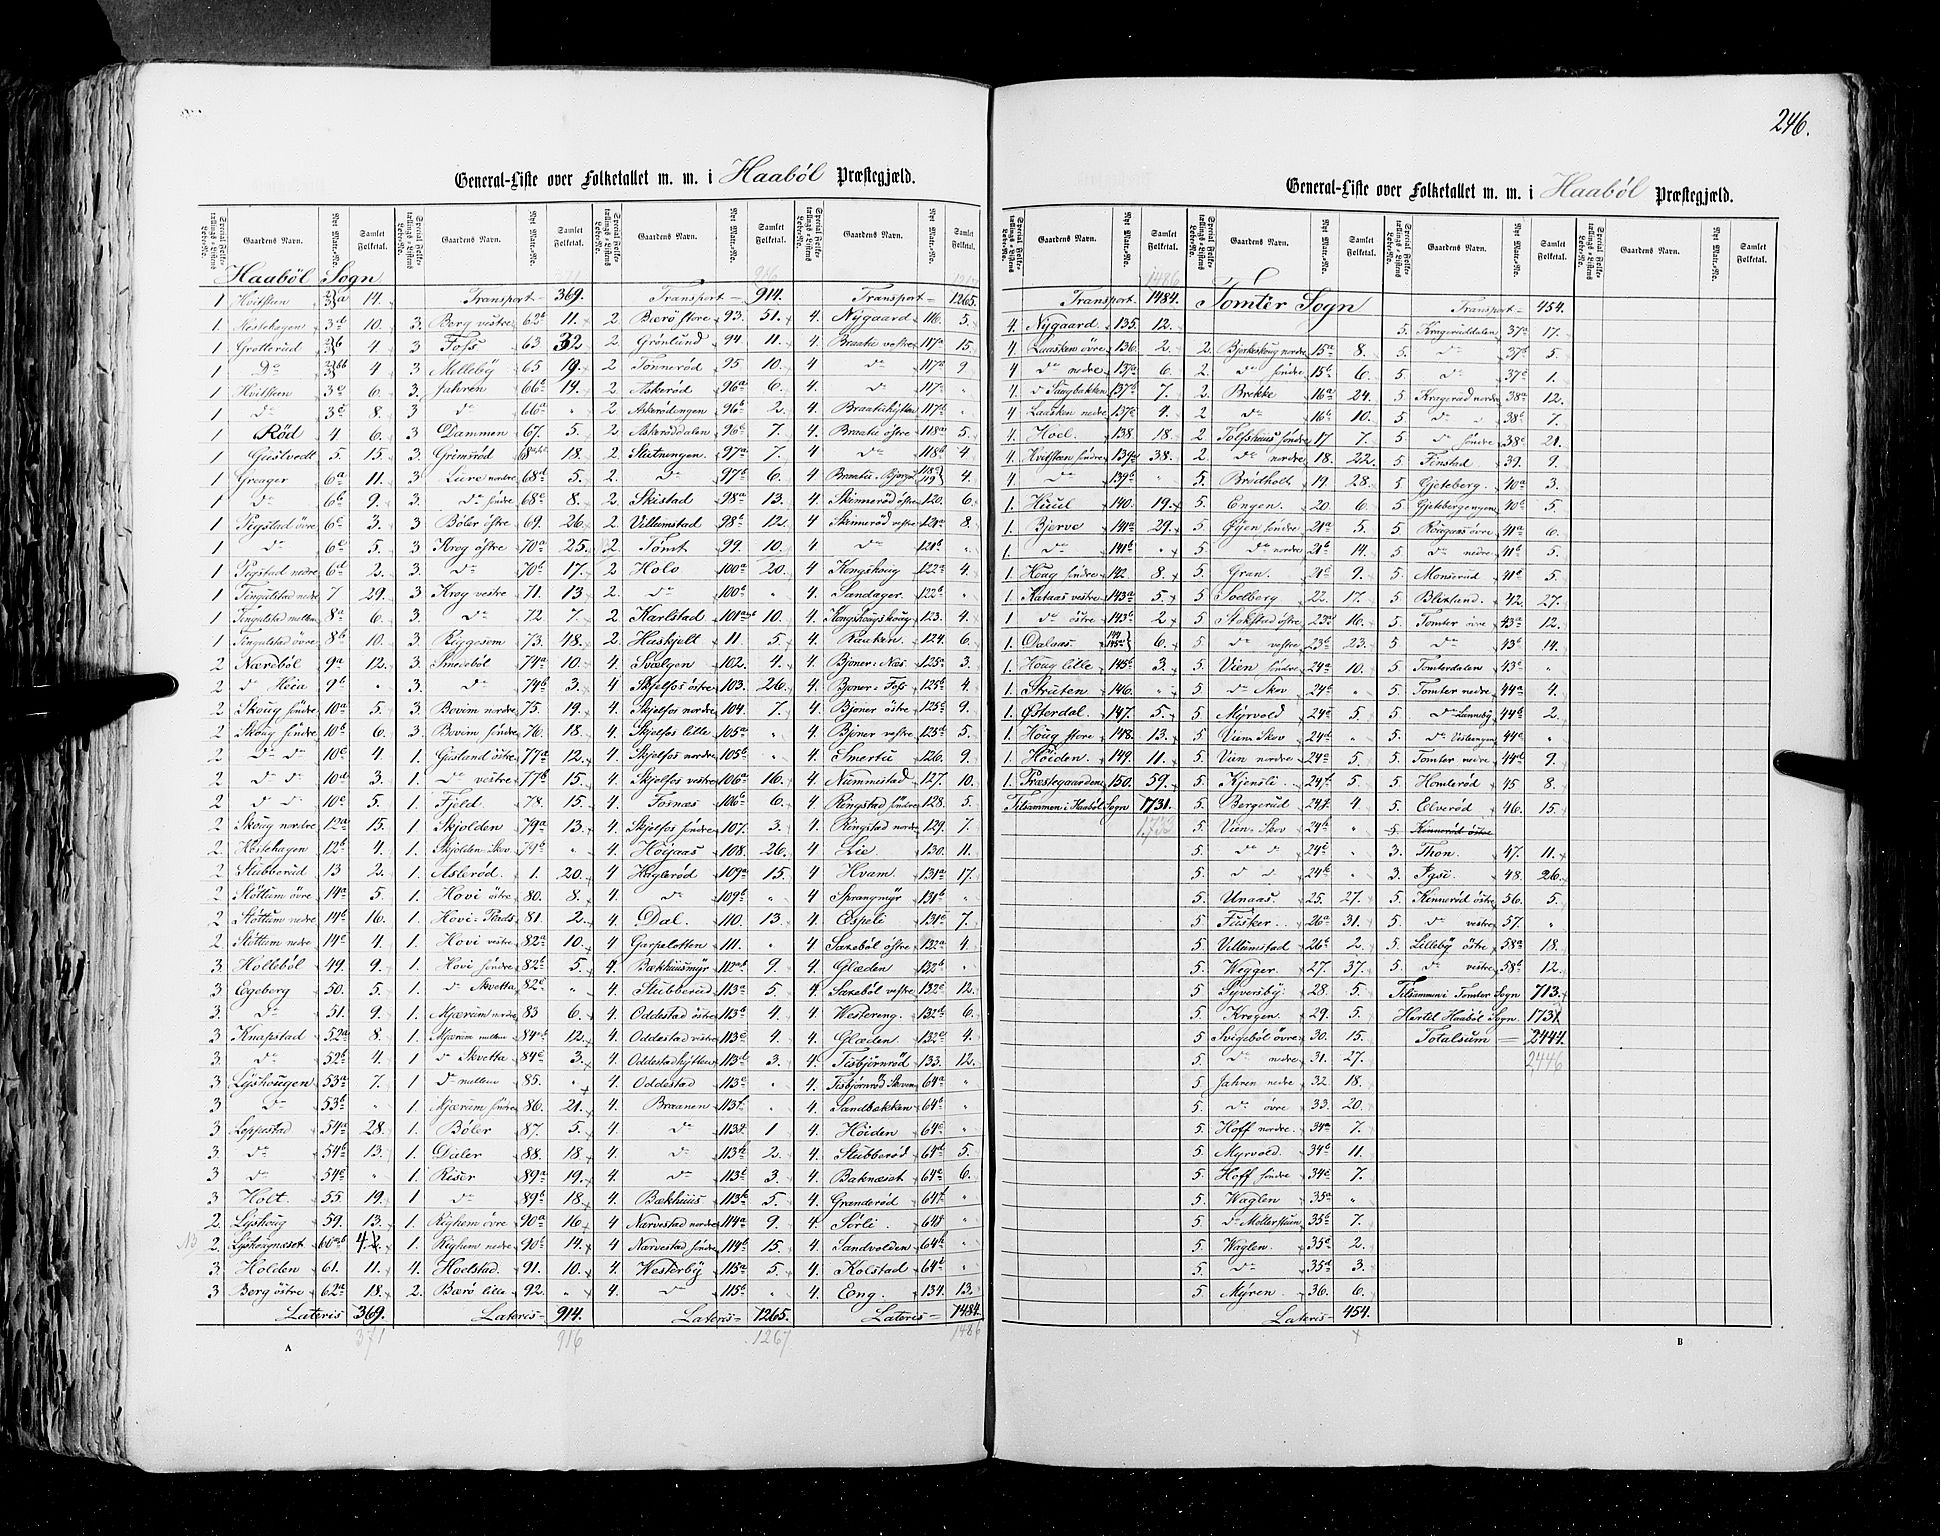 RA, Census 1855, vol. 1: Akershus amt, Smålenenes amt og Hedemarken amt, 1855, p. 246